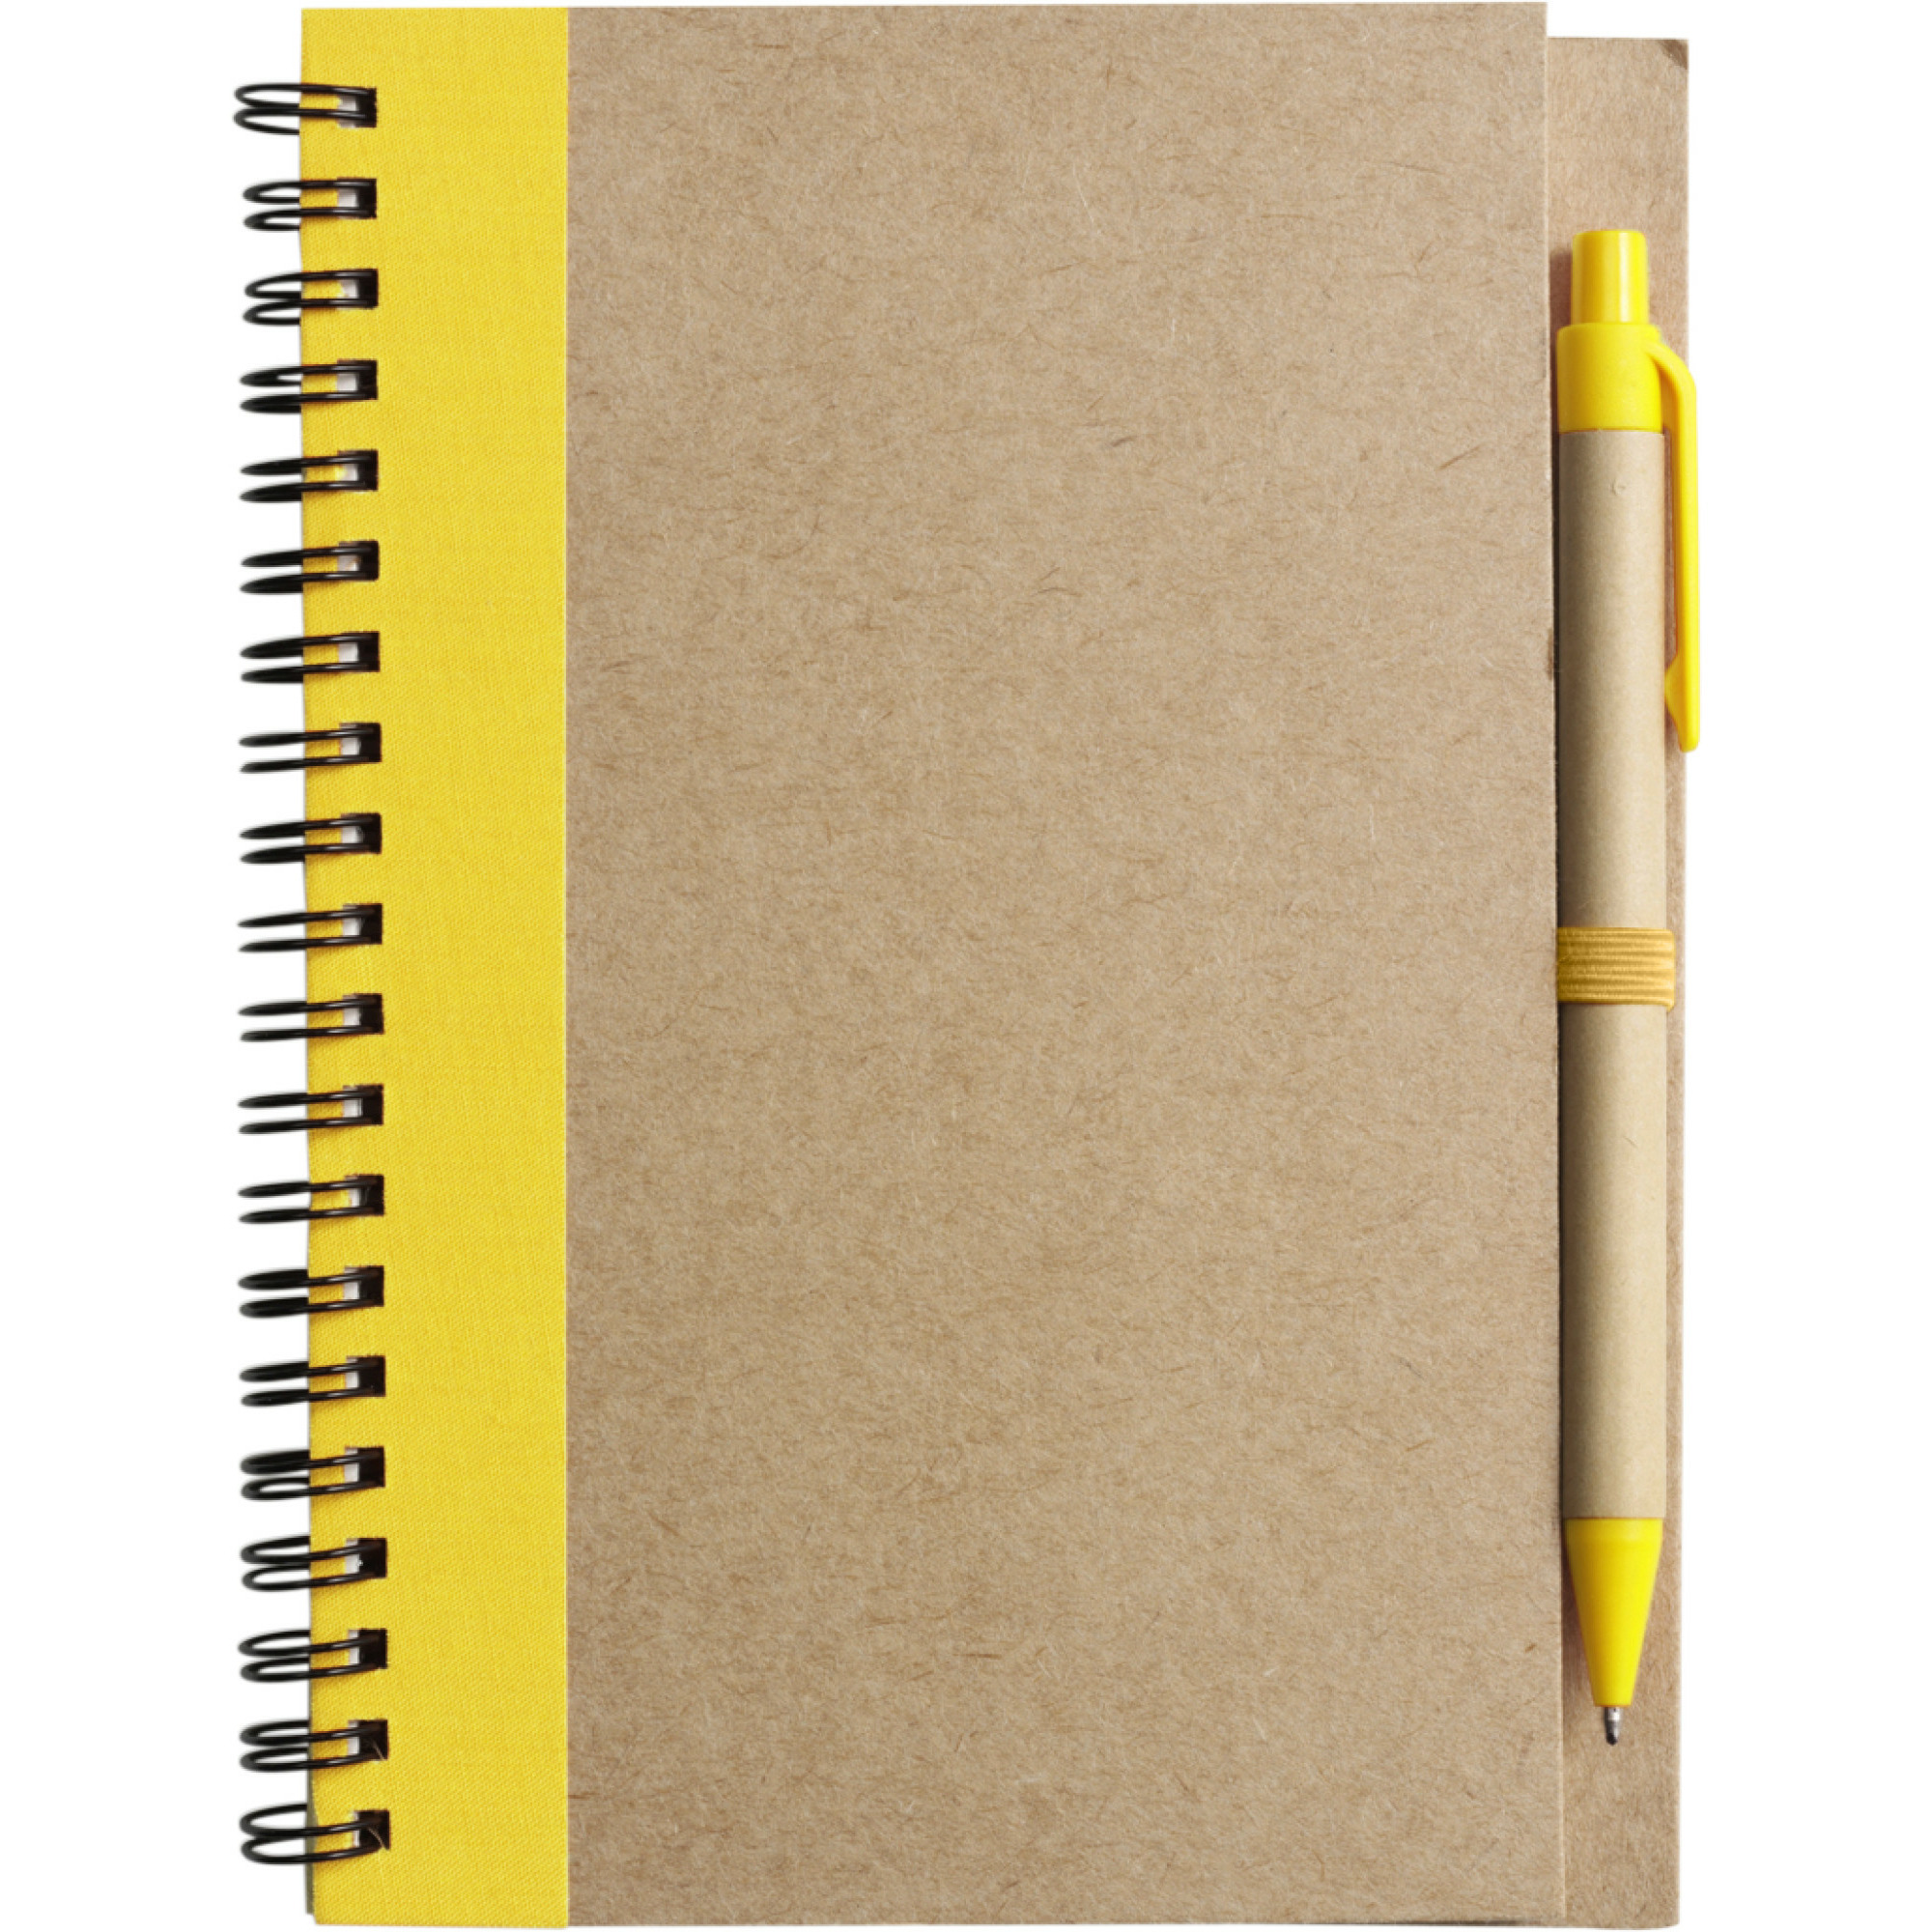 Notitie boekje-blok met balpen harde kaft beige-geel 18 x 13 cm 60 bladzijden gelinieerd